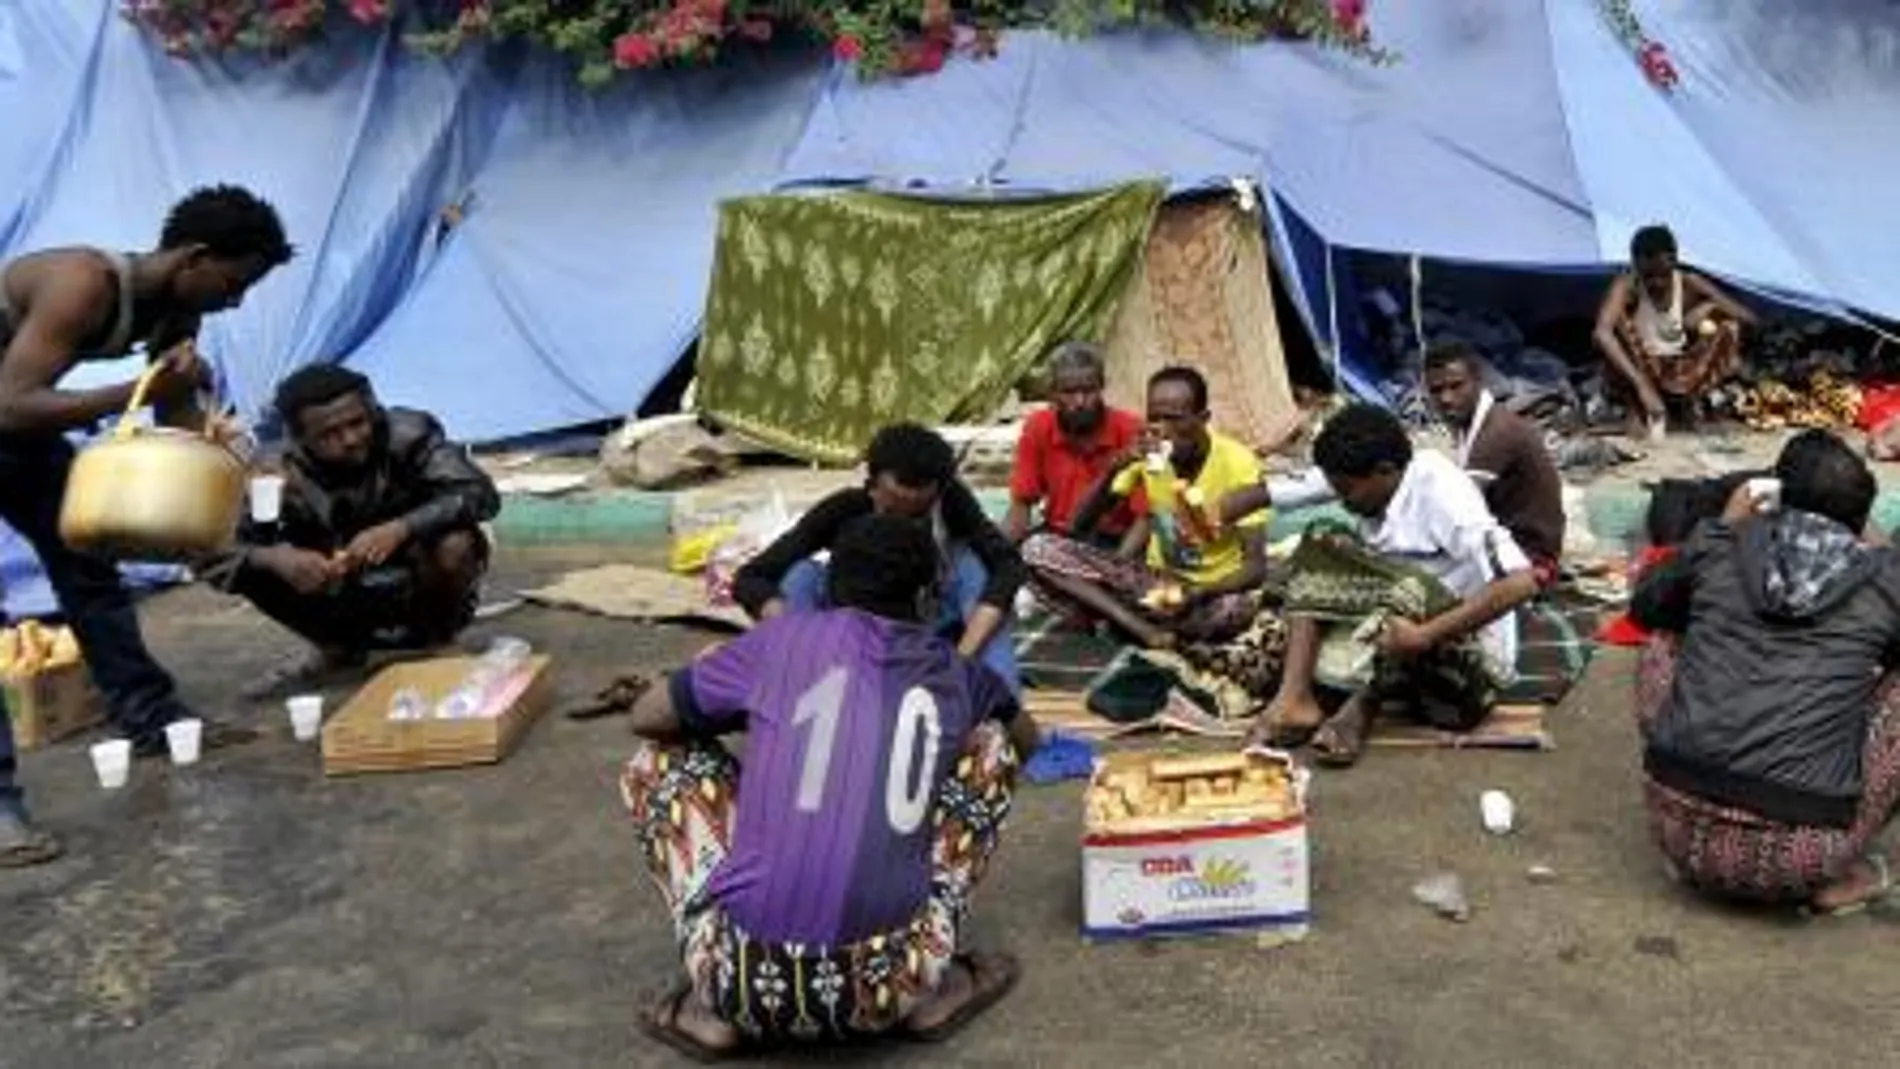 Un grupo de refugiados africanos descansan a la intemperie en un campo de refugiados situado junto a una carretera en Saná (Yemen)